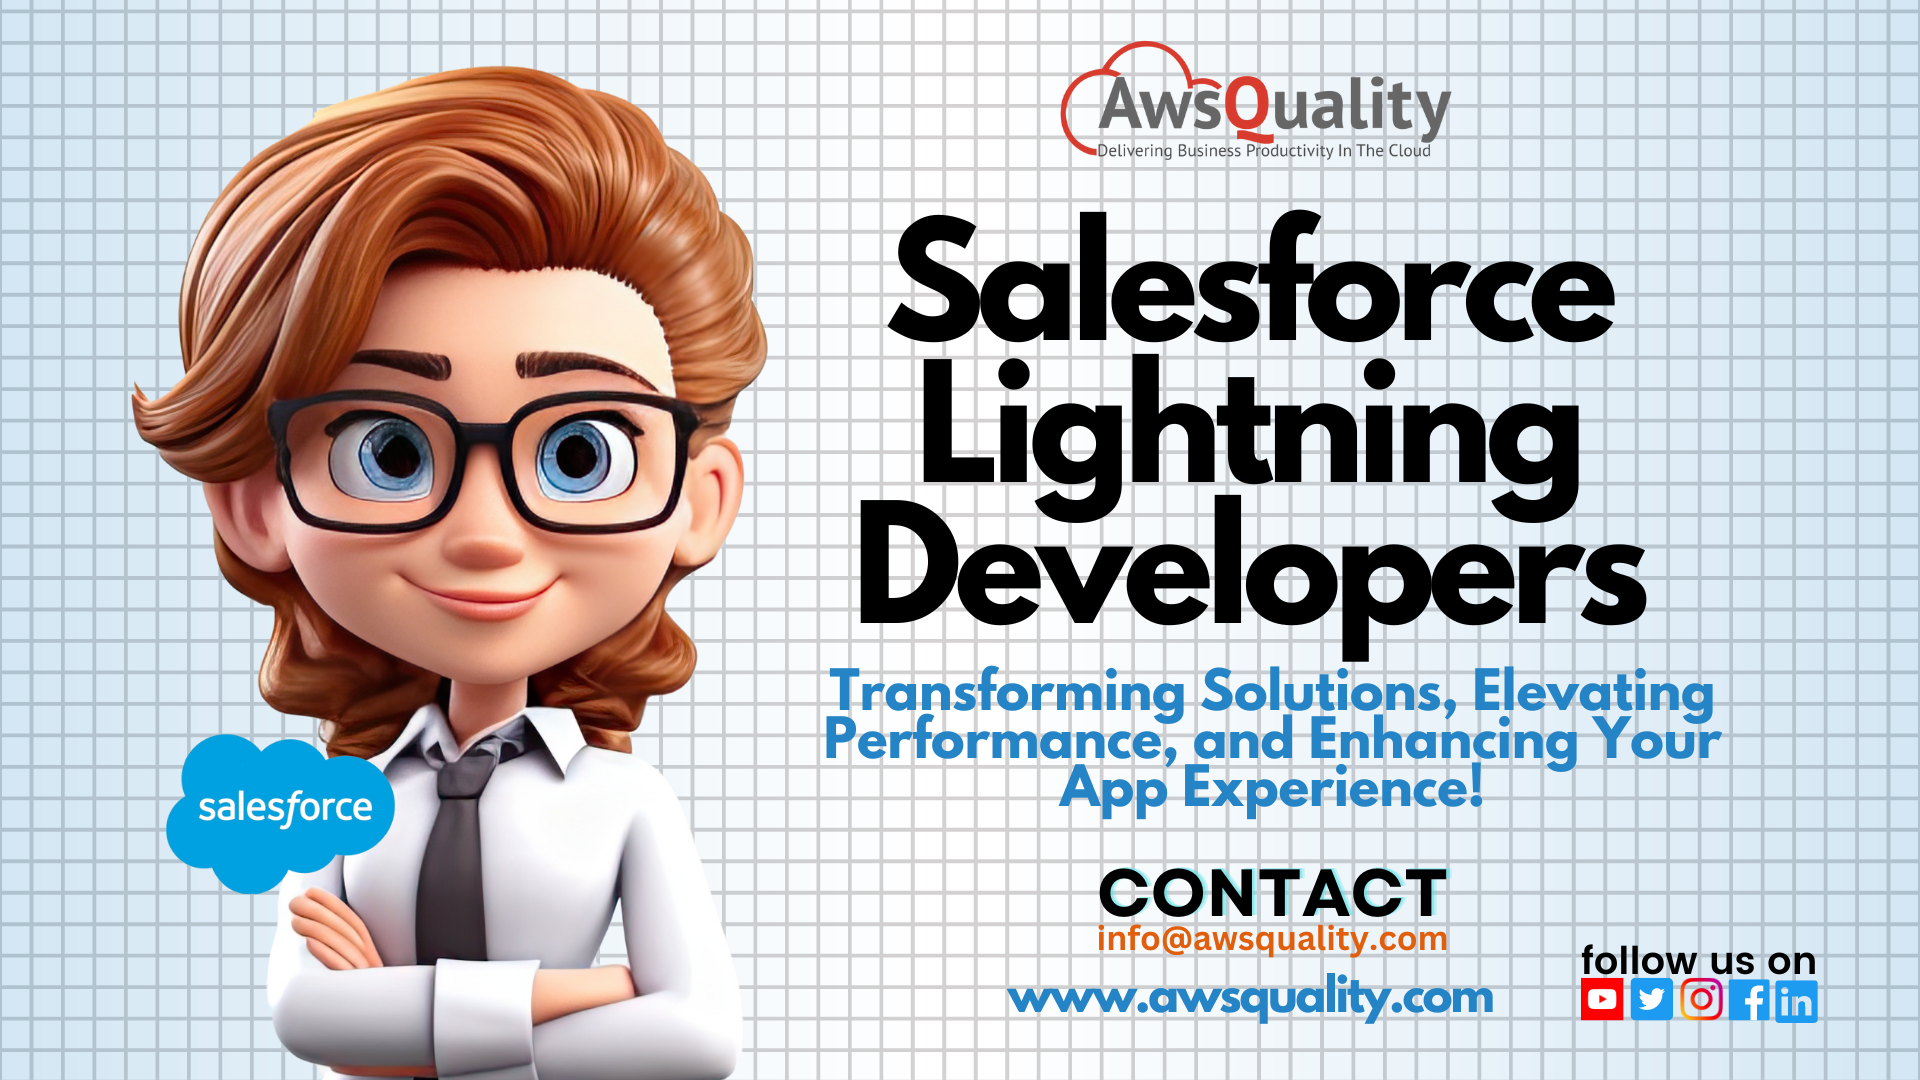 Salesforce Lightning Developers